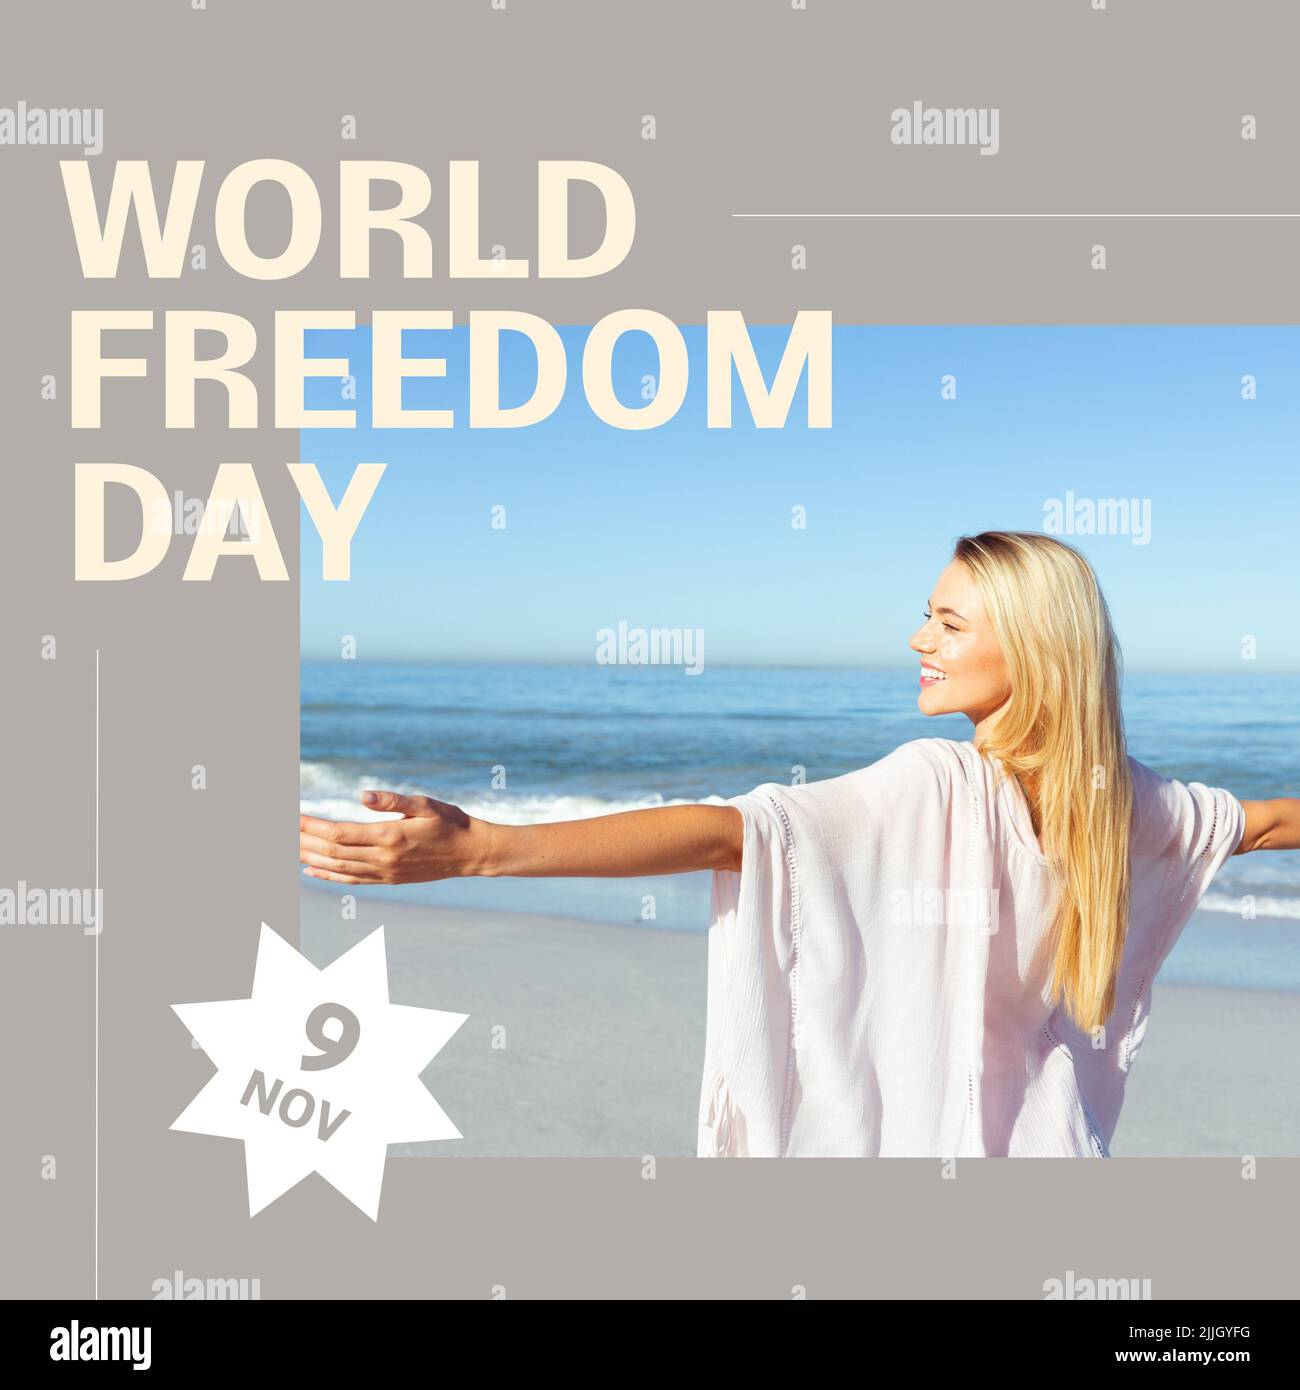 Bild vom Weltfreiheitstag über glückliche kaukasische Frau am Strand Stockfoto